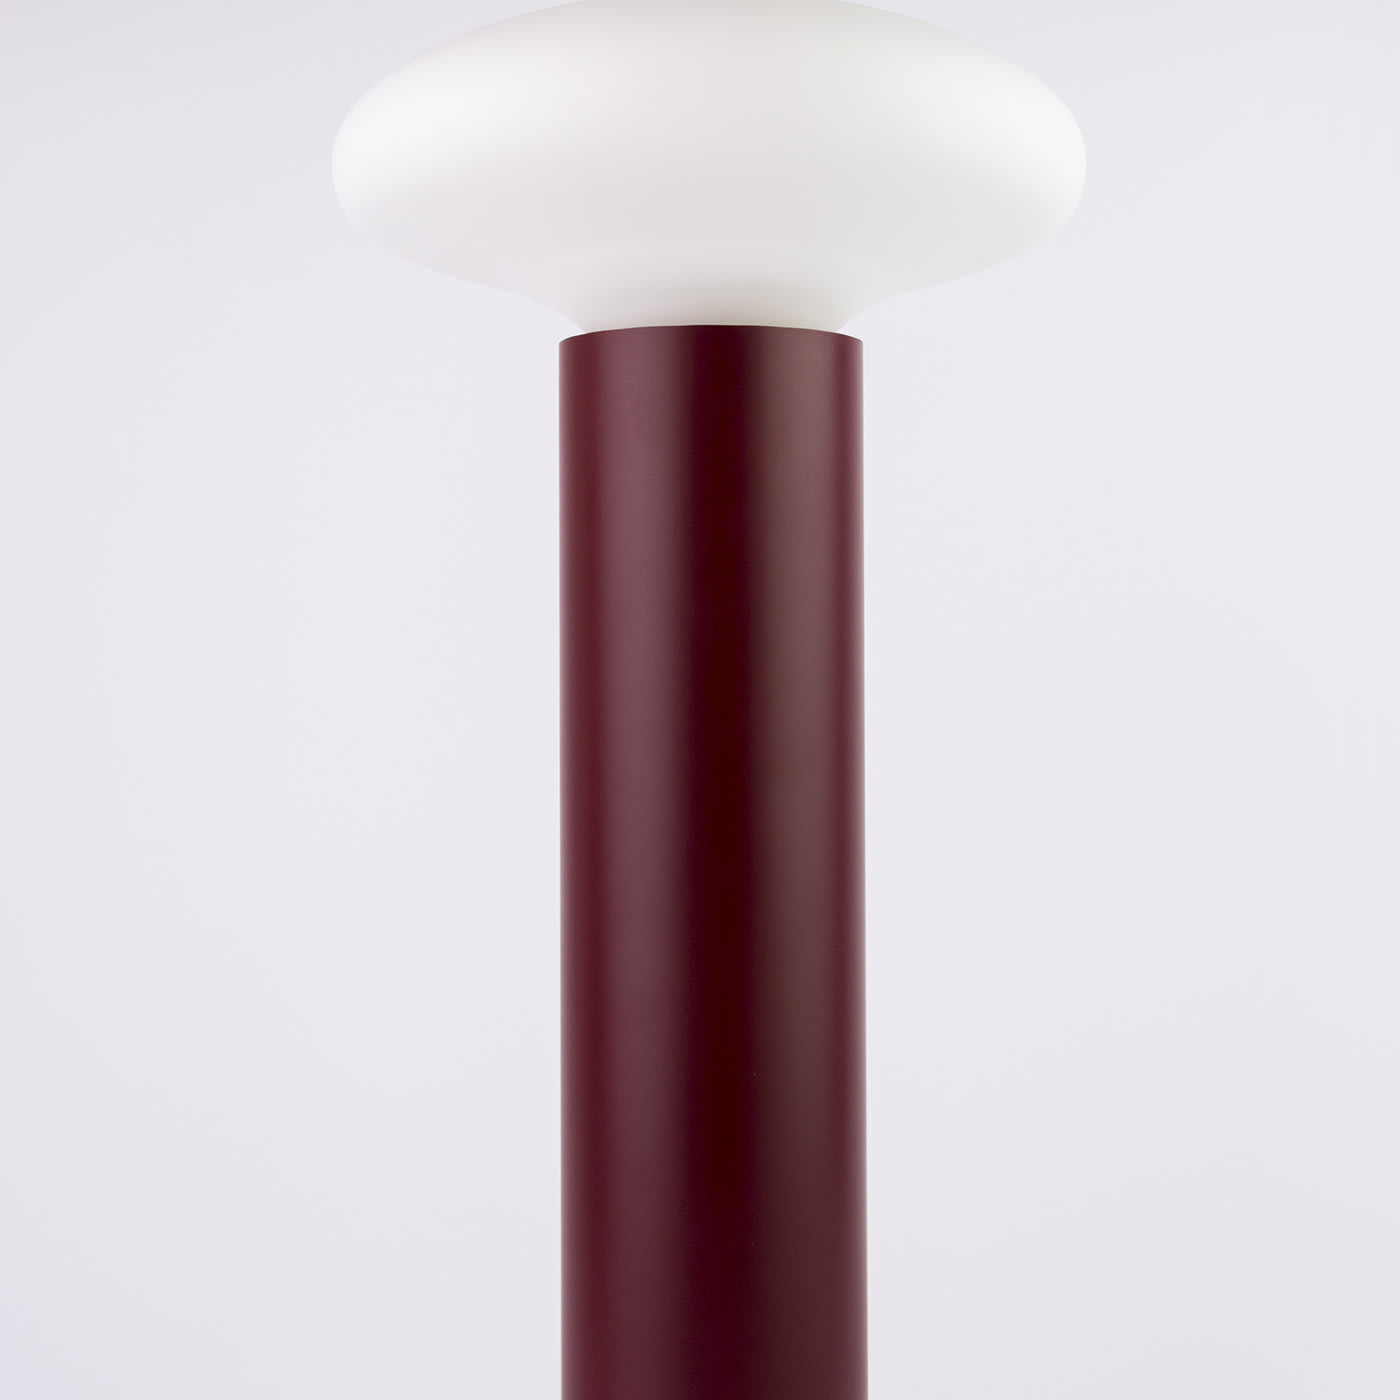 Stem Floor Lamp by Alalda Design - Interia